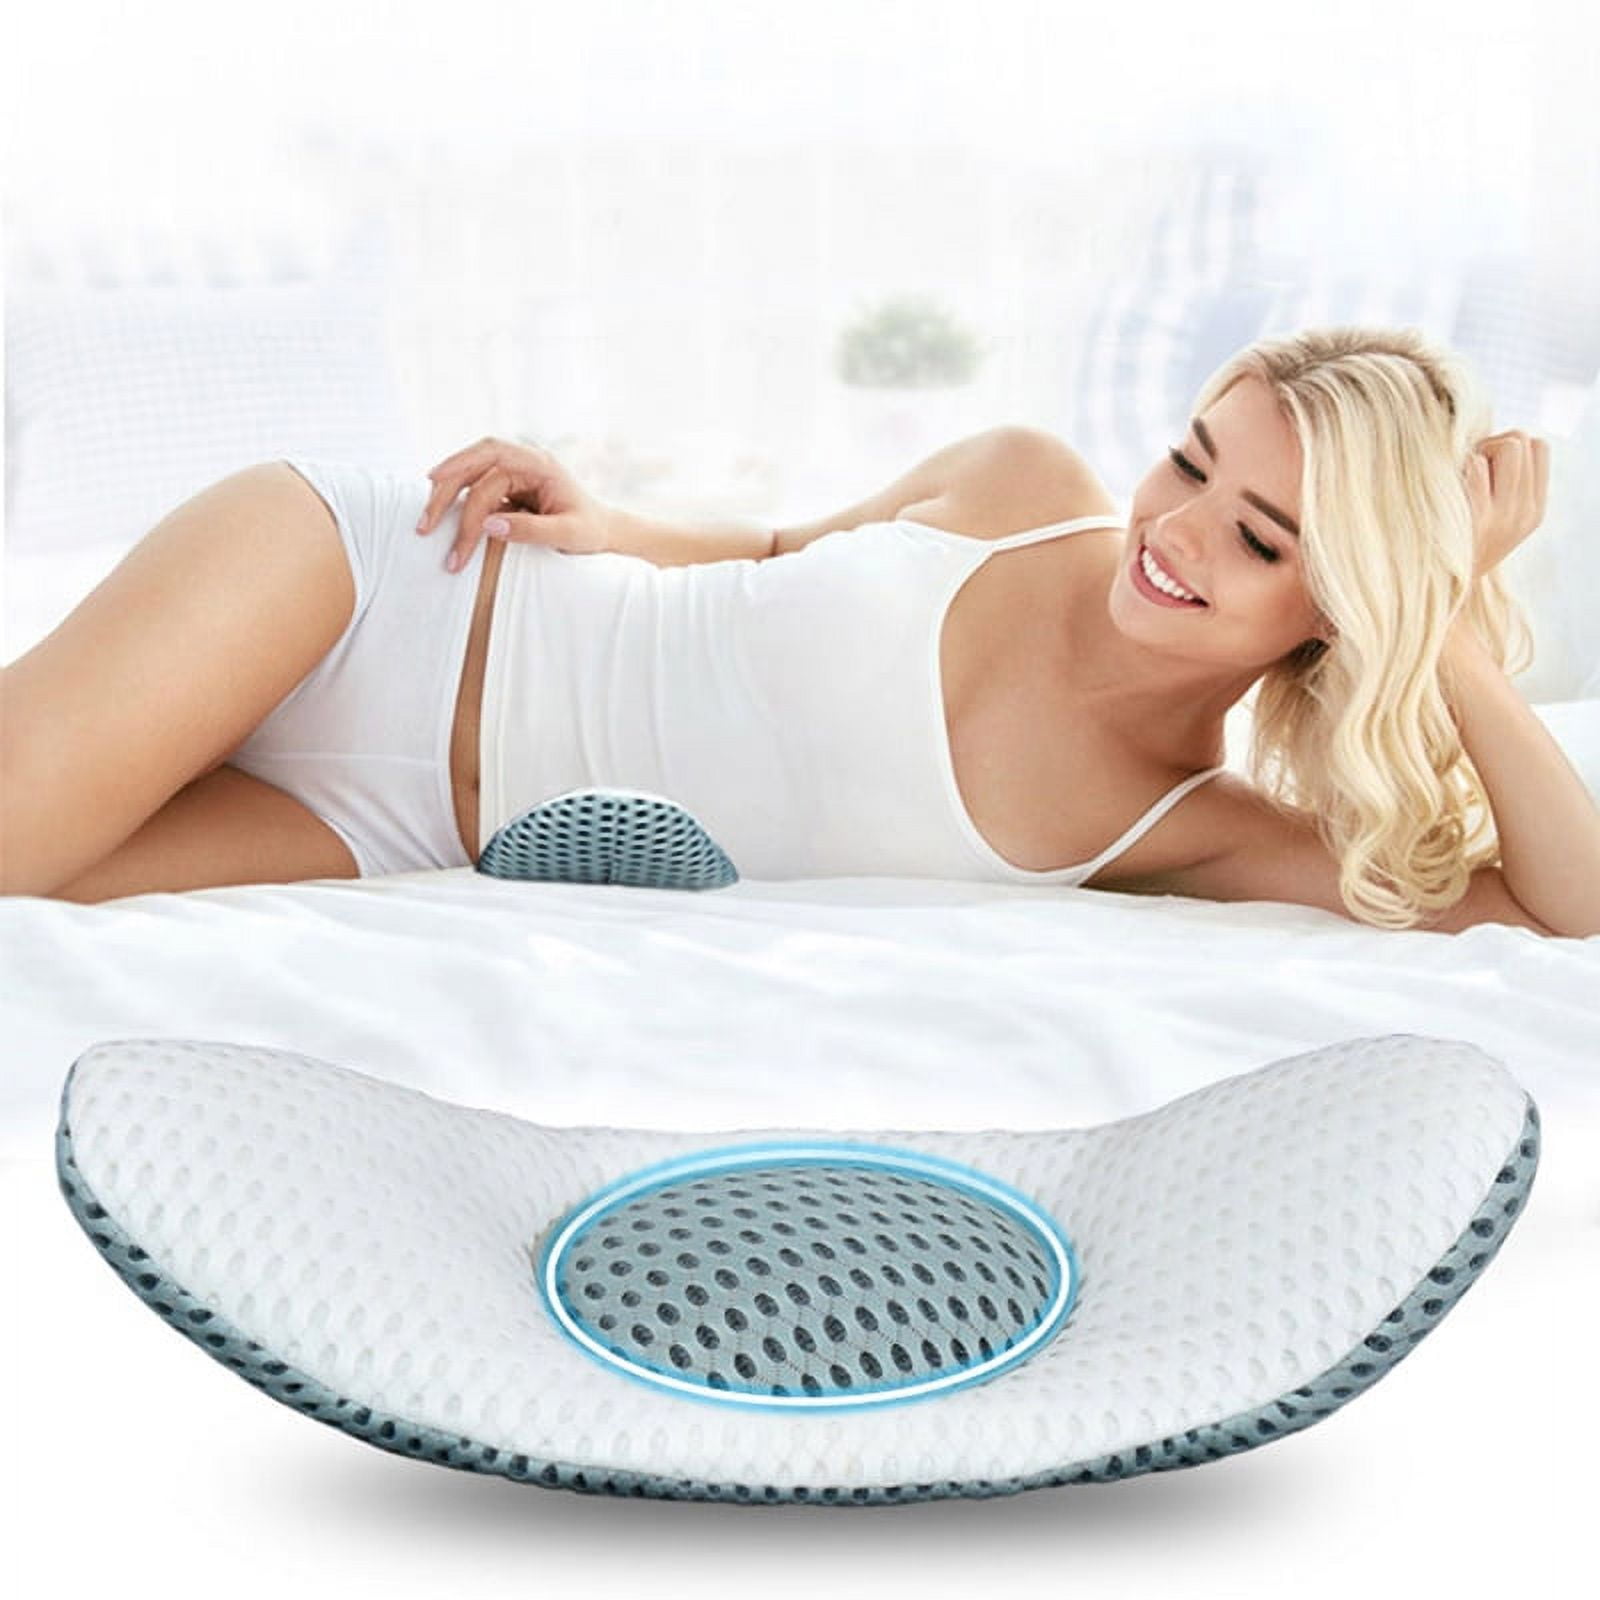 Solid Cushion Core Head Waist Pillow - White / 30x50cm